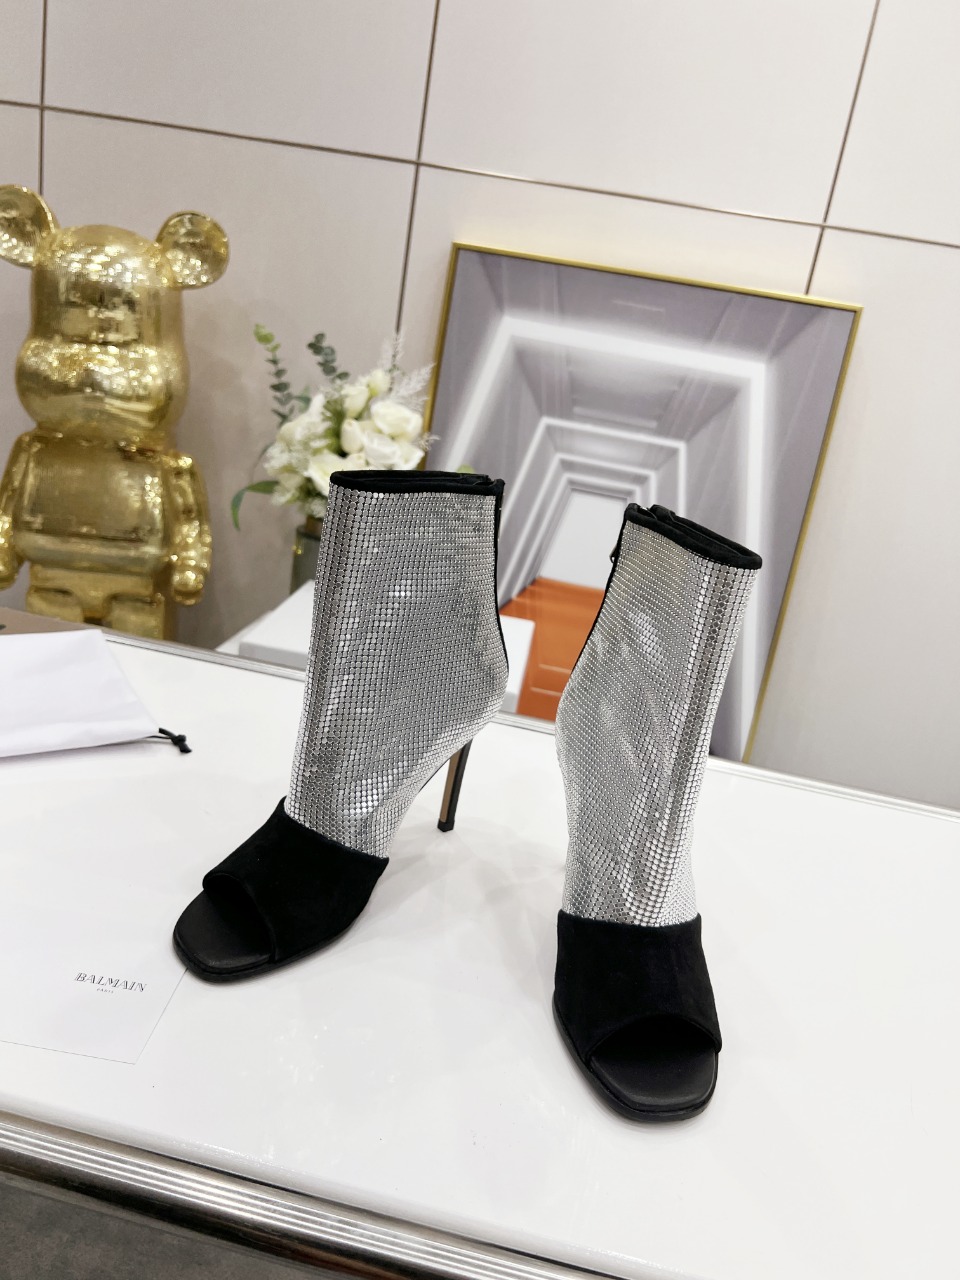 Bal*ain巴尔曼春夏最新款走秀款凉靴️法国代购原版回来历经数月全部私模打造确保所有用料材质制作工艺与